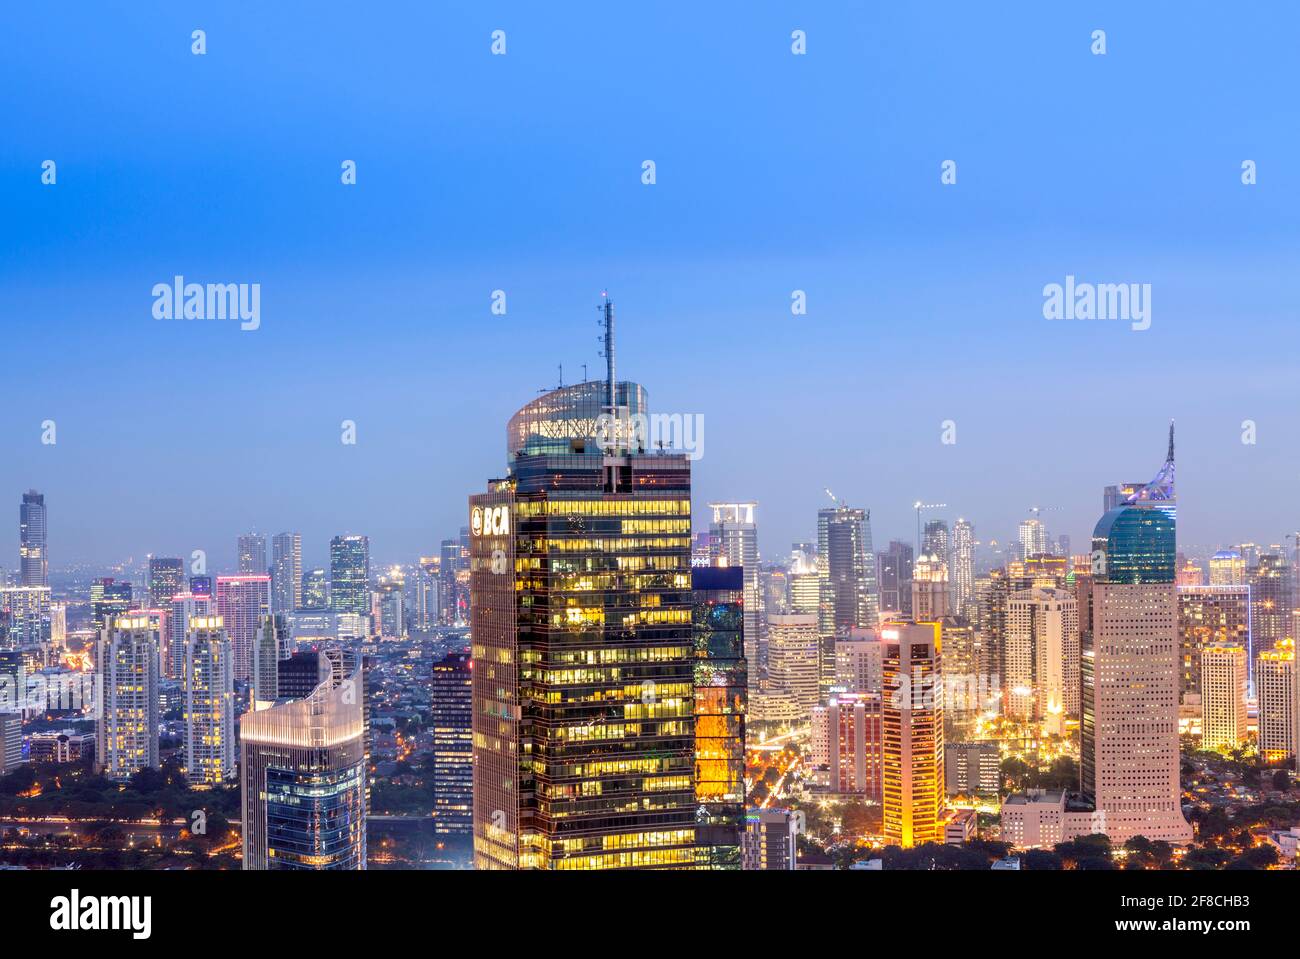 Die beleuchtete Skyline der Innenstadt von Jakarta - der Hauptstadt Indonesiens, zeigt das Central Business District, Jakarta, Indonesien Stockfoto